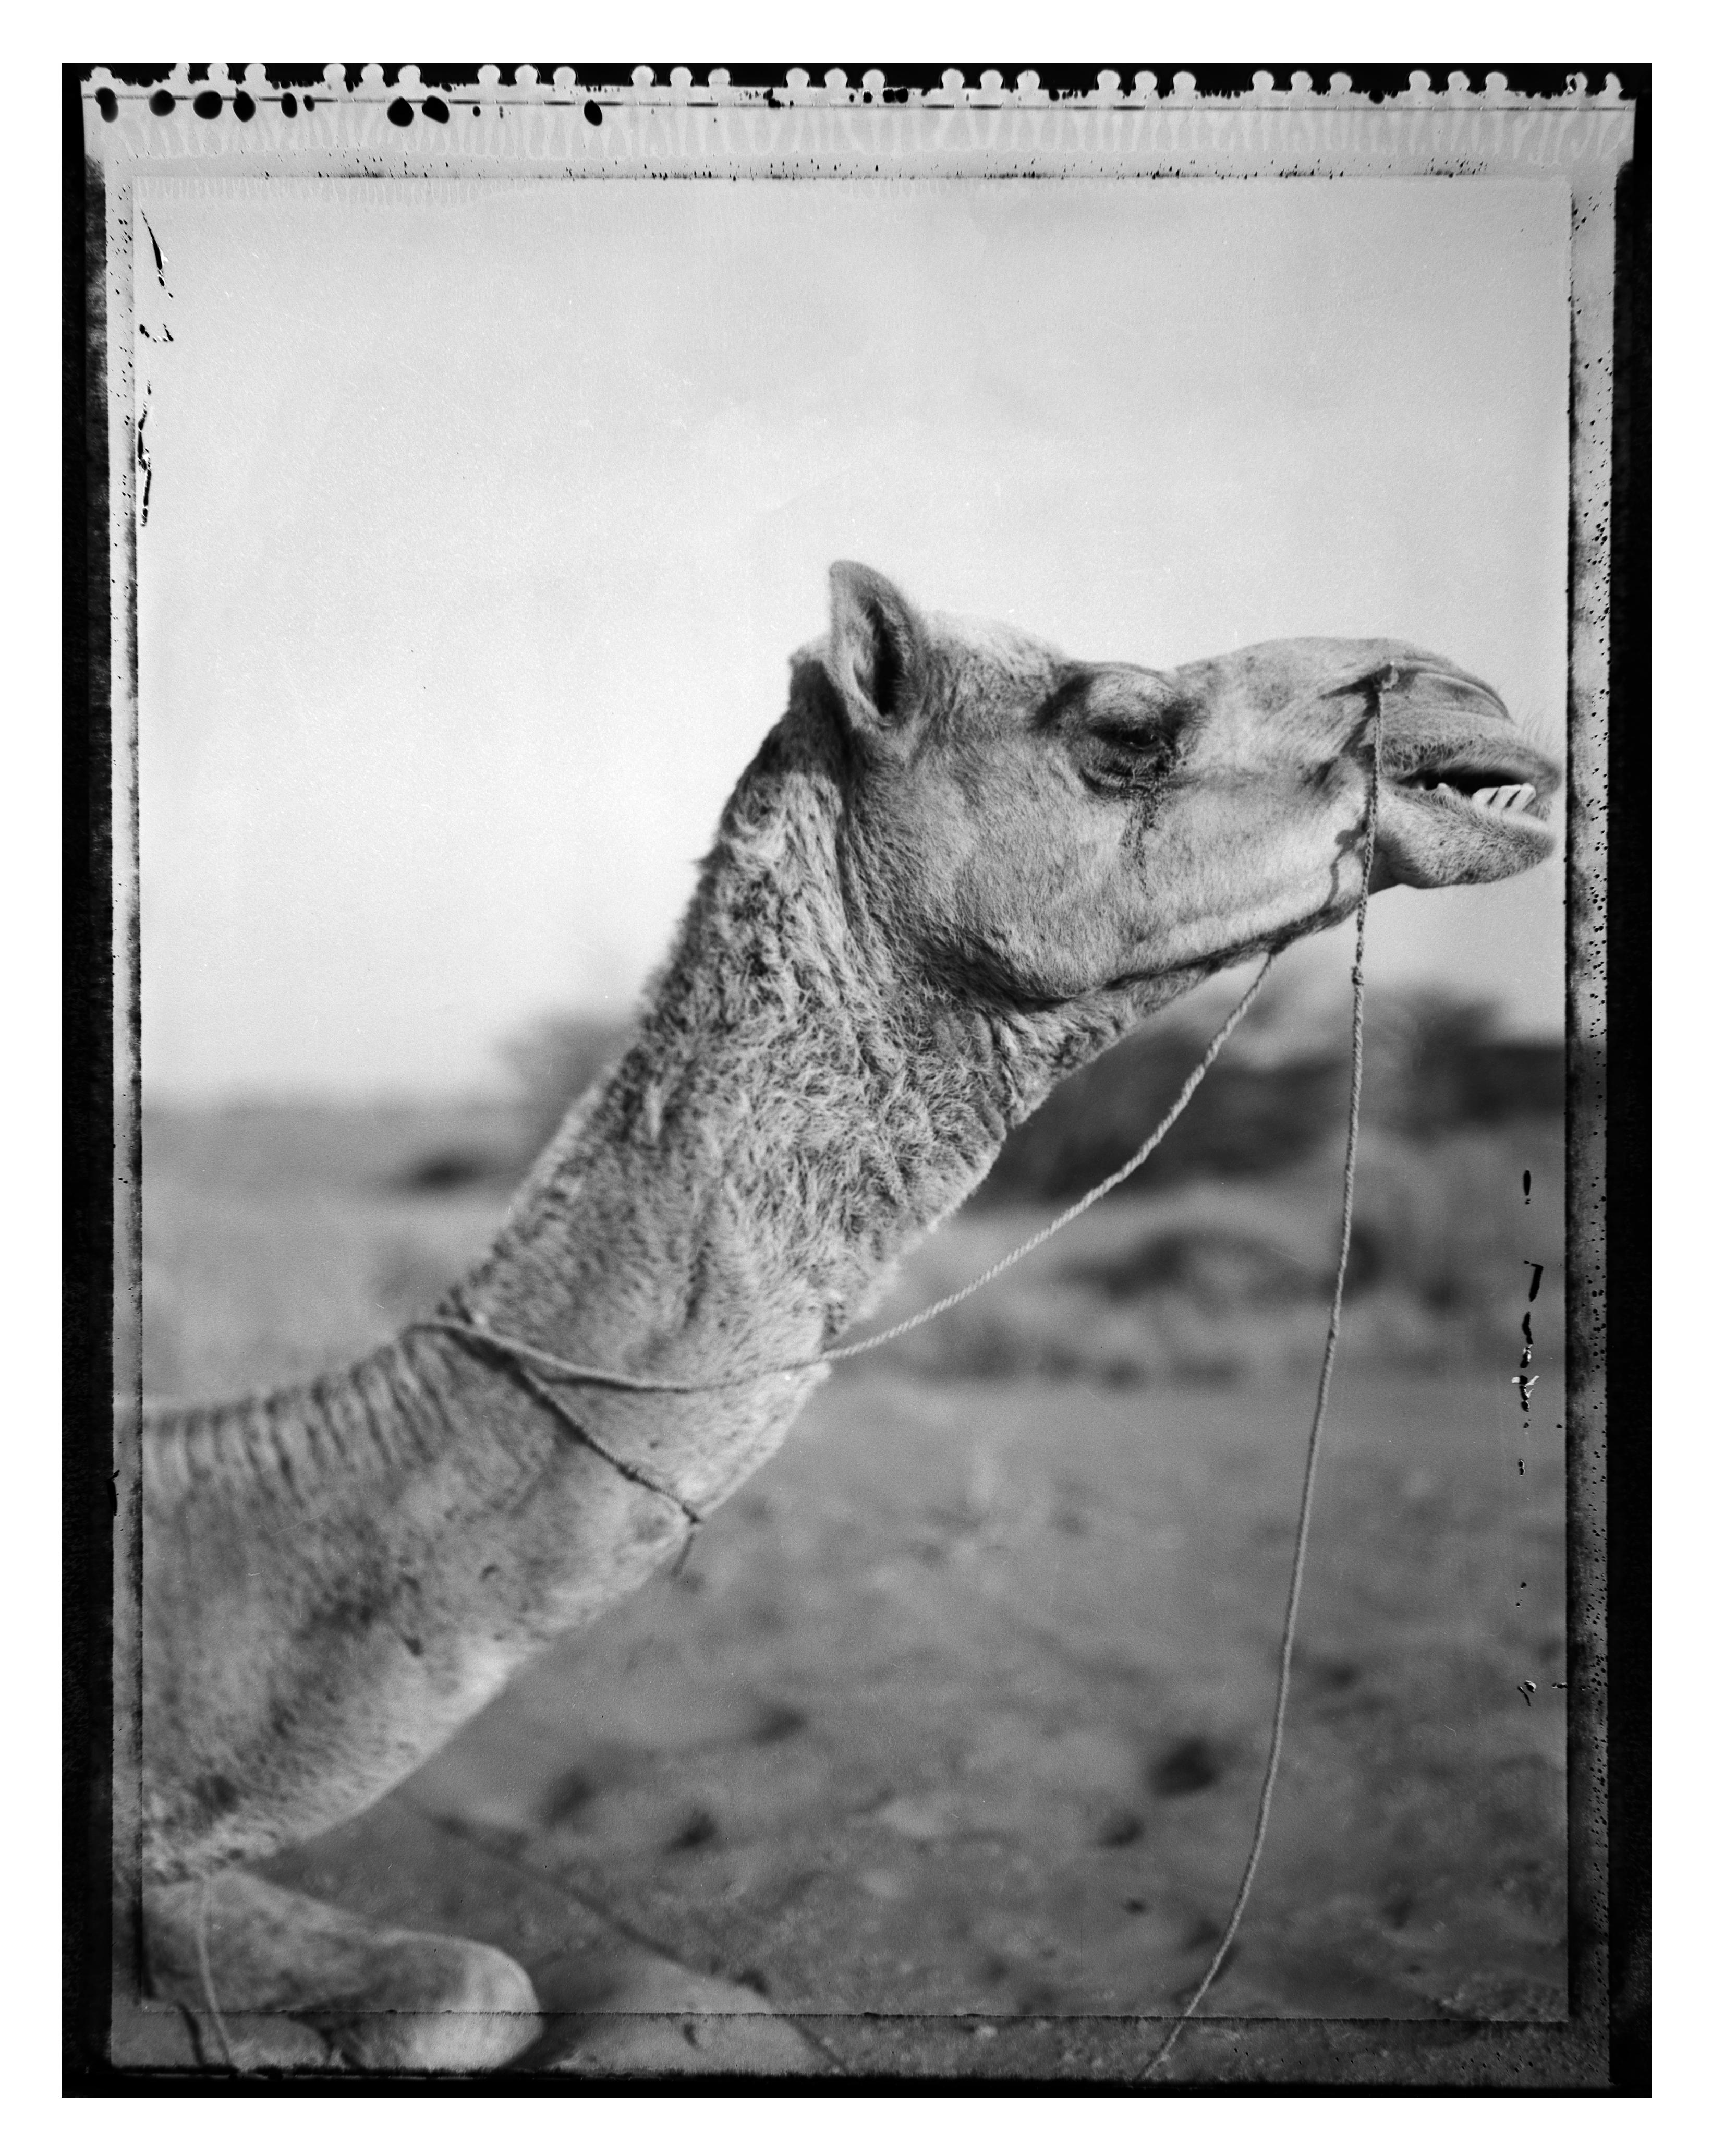 Un camello en las dunas  - Rajastán -India (de la serie Indian Stills )